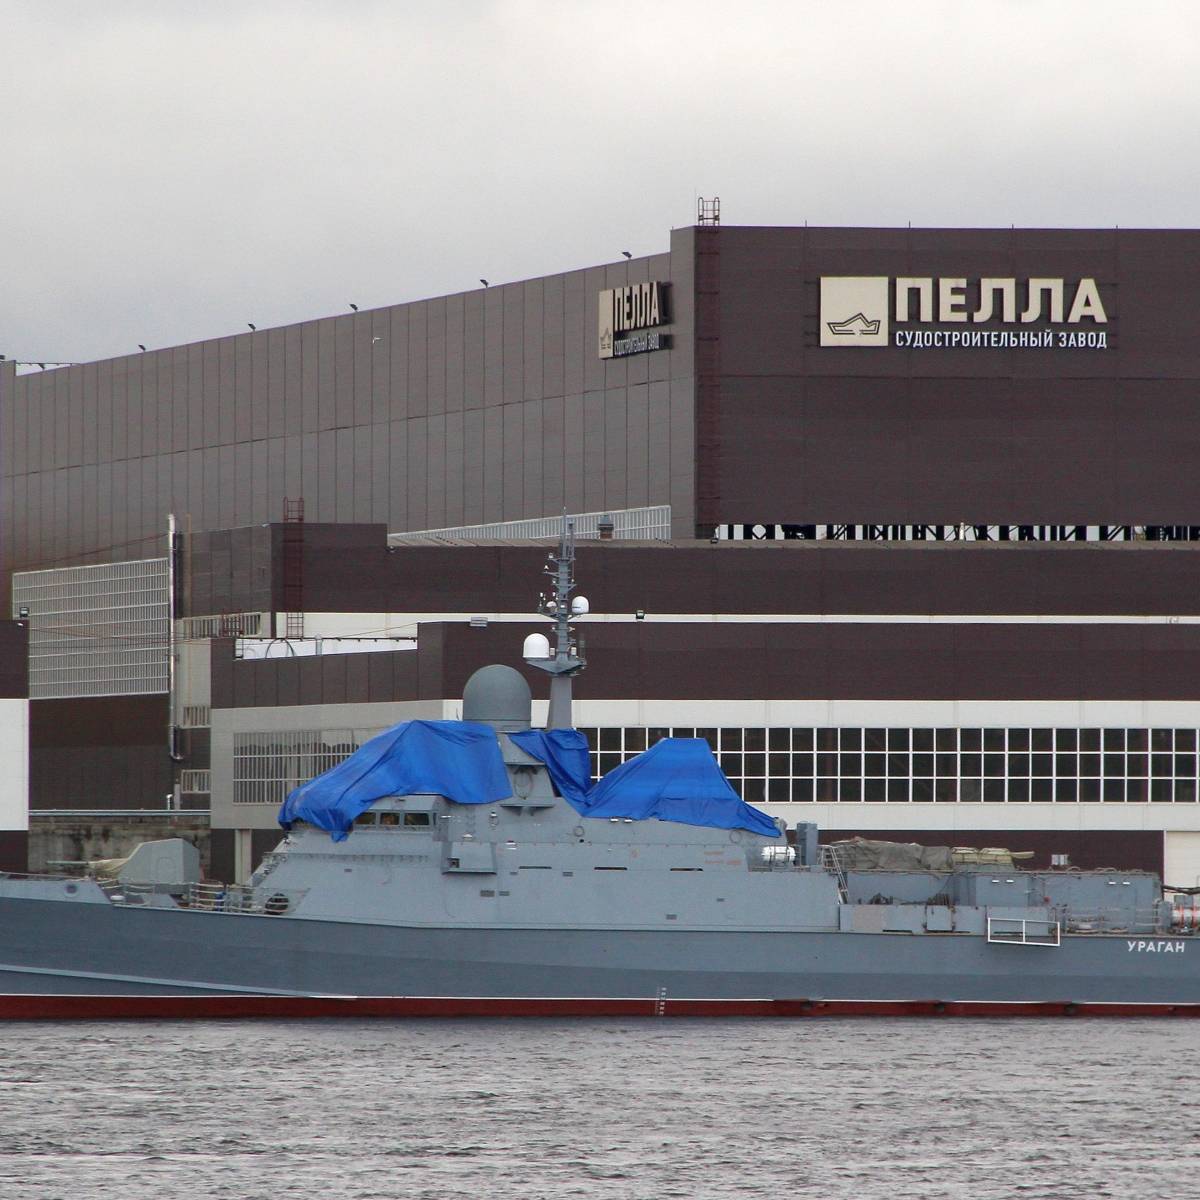 Проект «Каракурт»: МКР «Ураган» готовится встать на вооружение ВМФ РФ